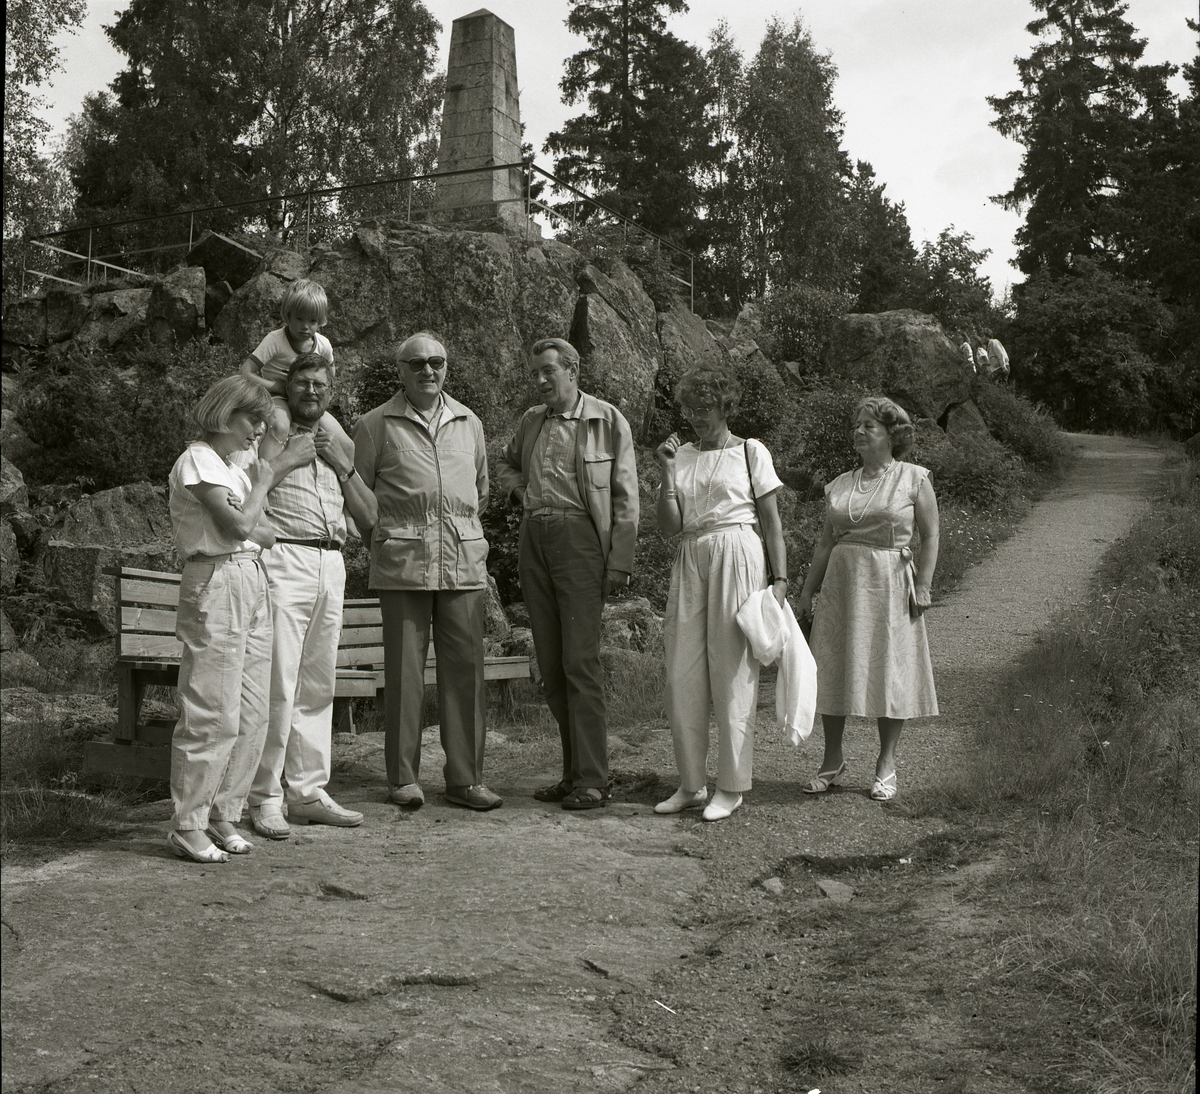 Adéle, t h i bild, står med en grupp vuxna och barn på en gångväg nedanför ett slags monument, 25-29 juli 1985.